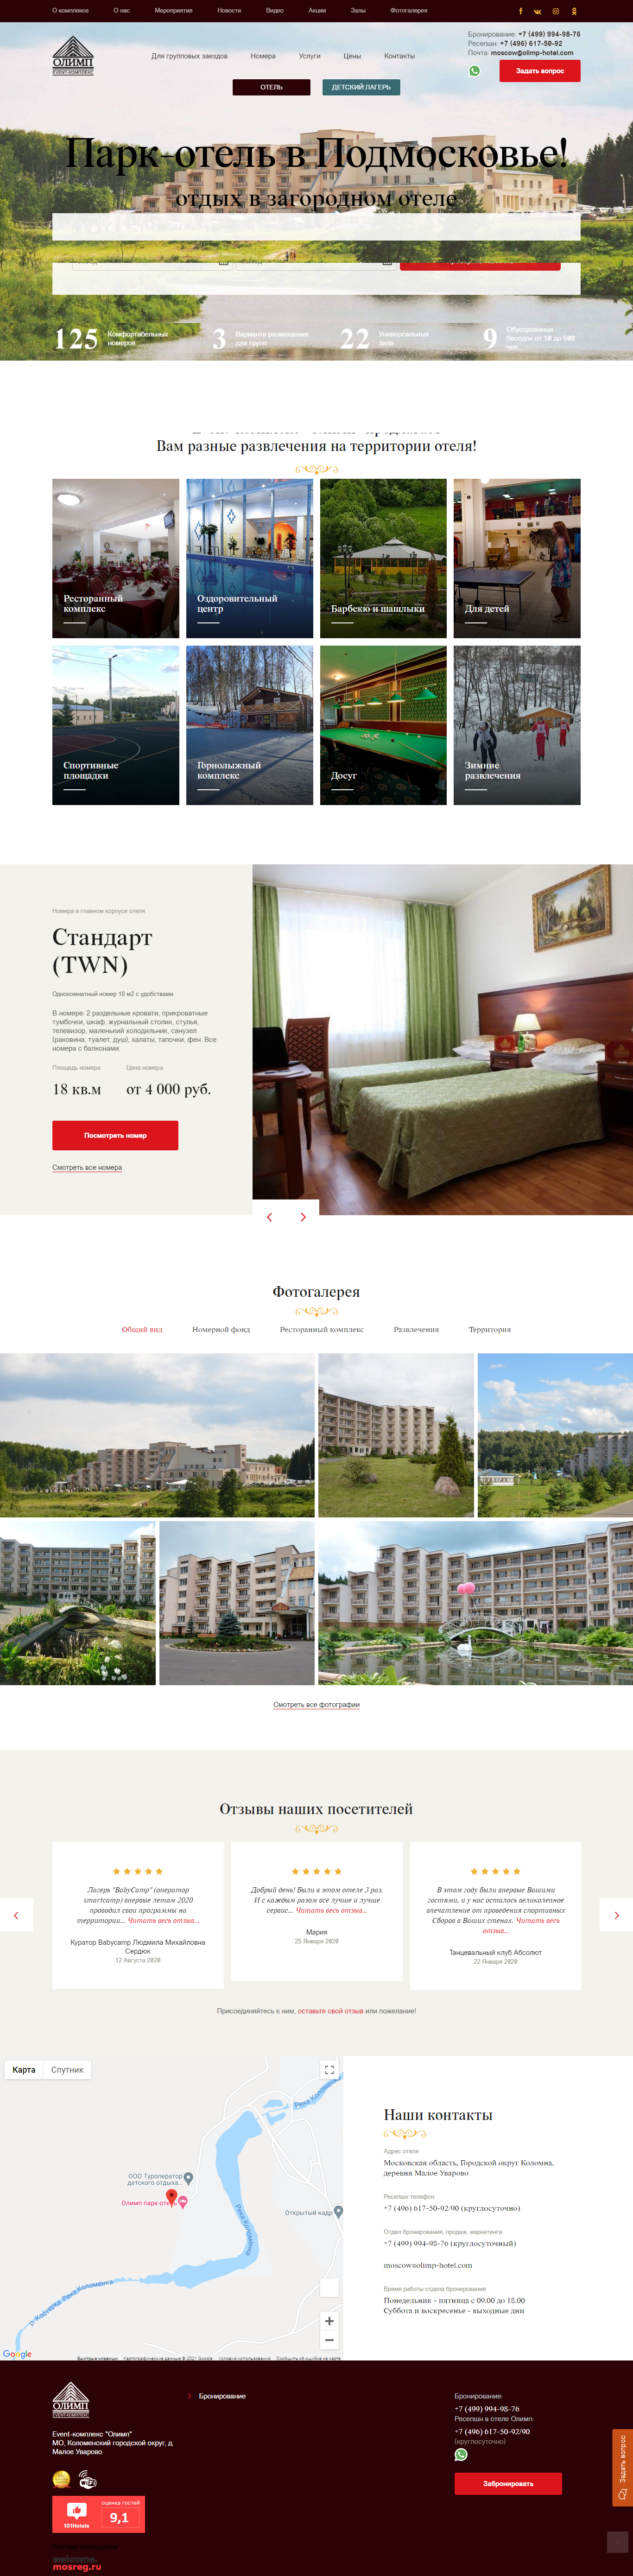 Шаблон лендинга:Парк отель - отдых в загородном отеле 